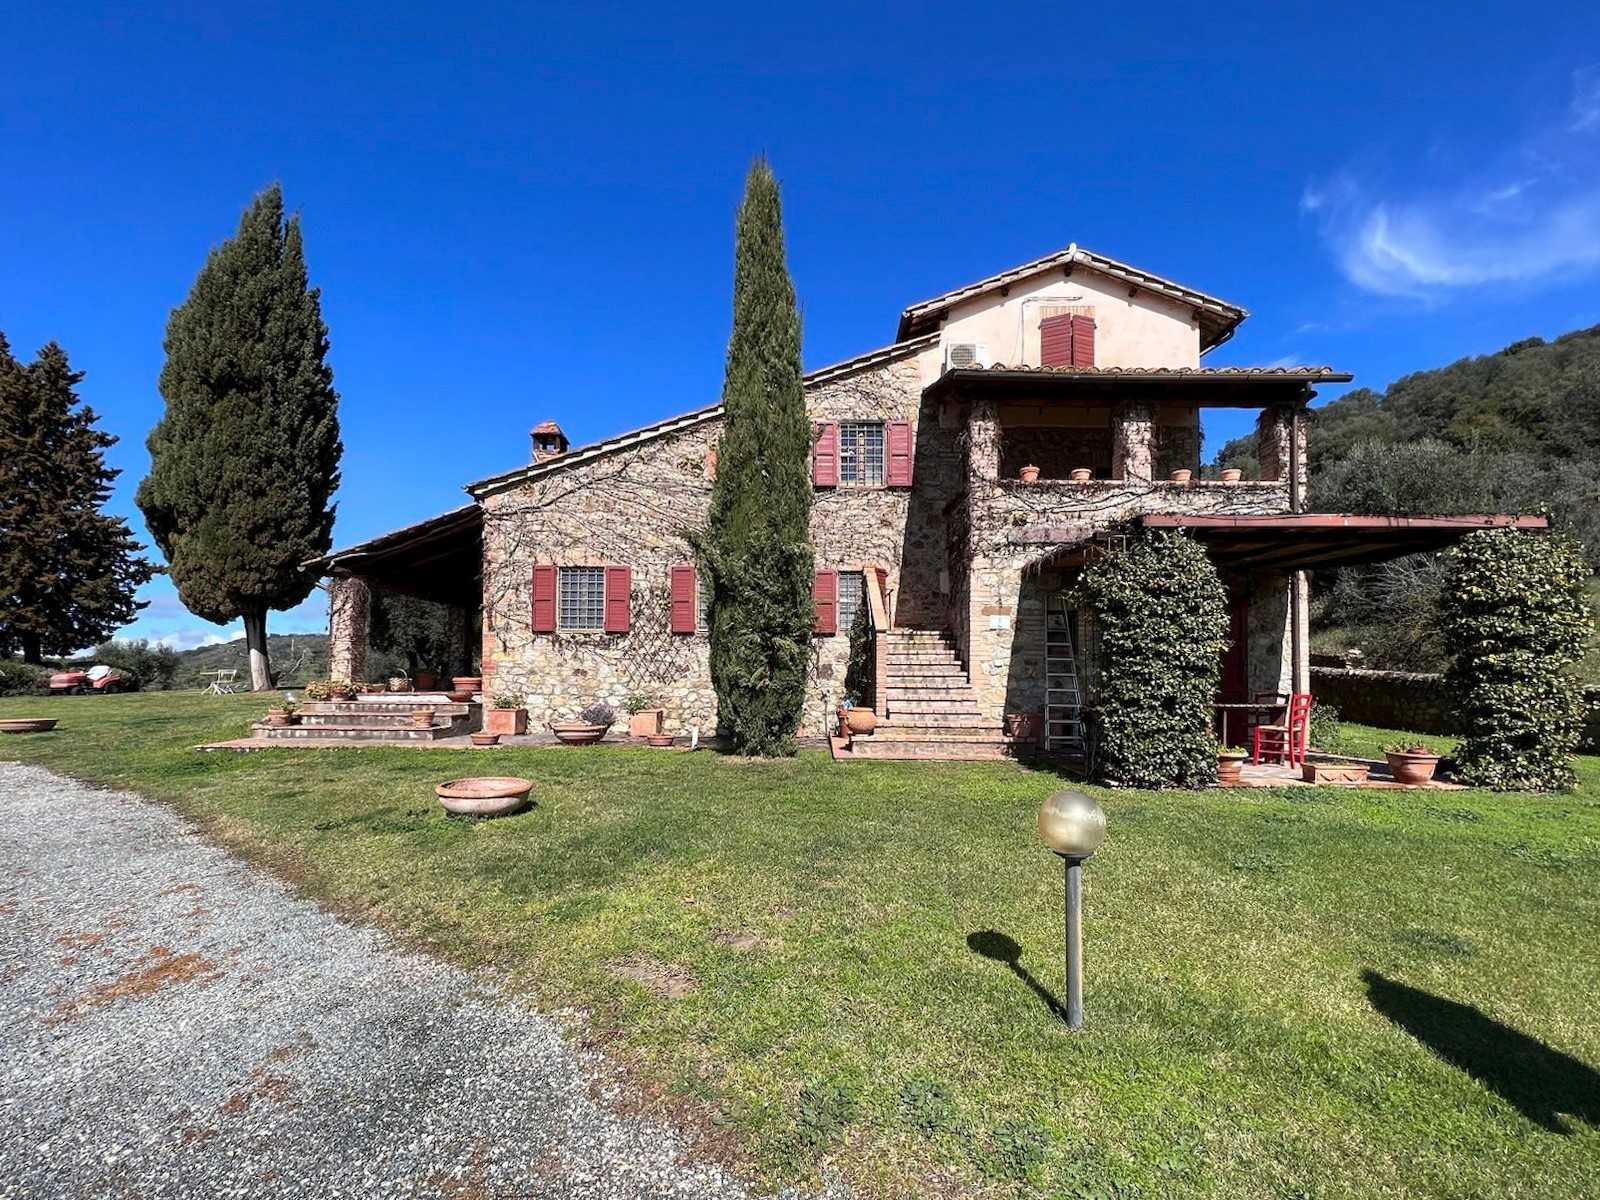 Dom na wsi na sprzedaż Campagnatico, Toskania:  Widok z przodu